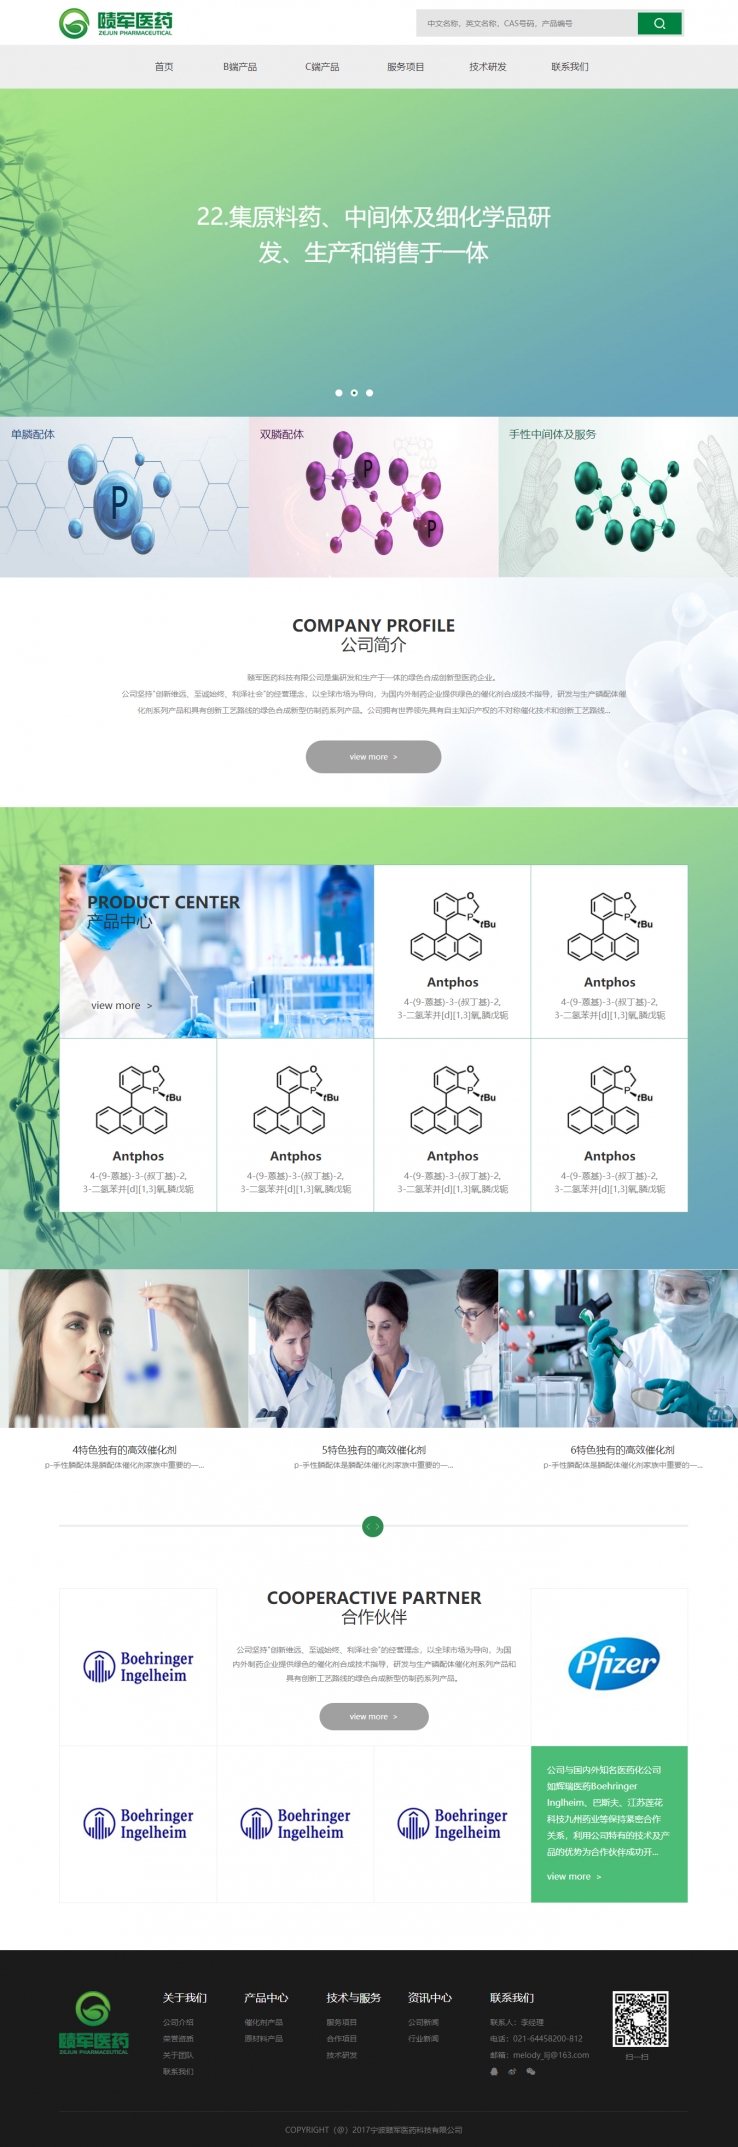 绿色宽屏风格的生物医药化学企业网站源码下载